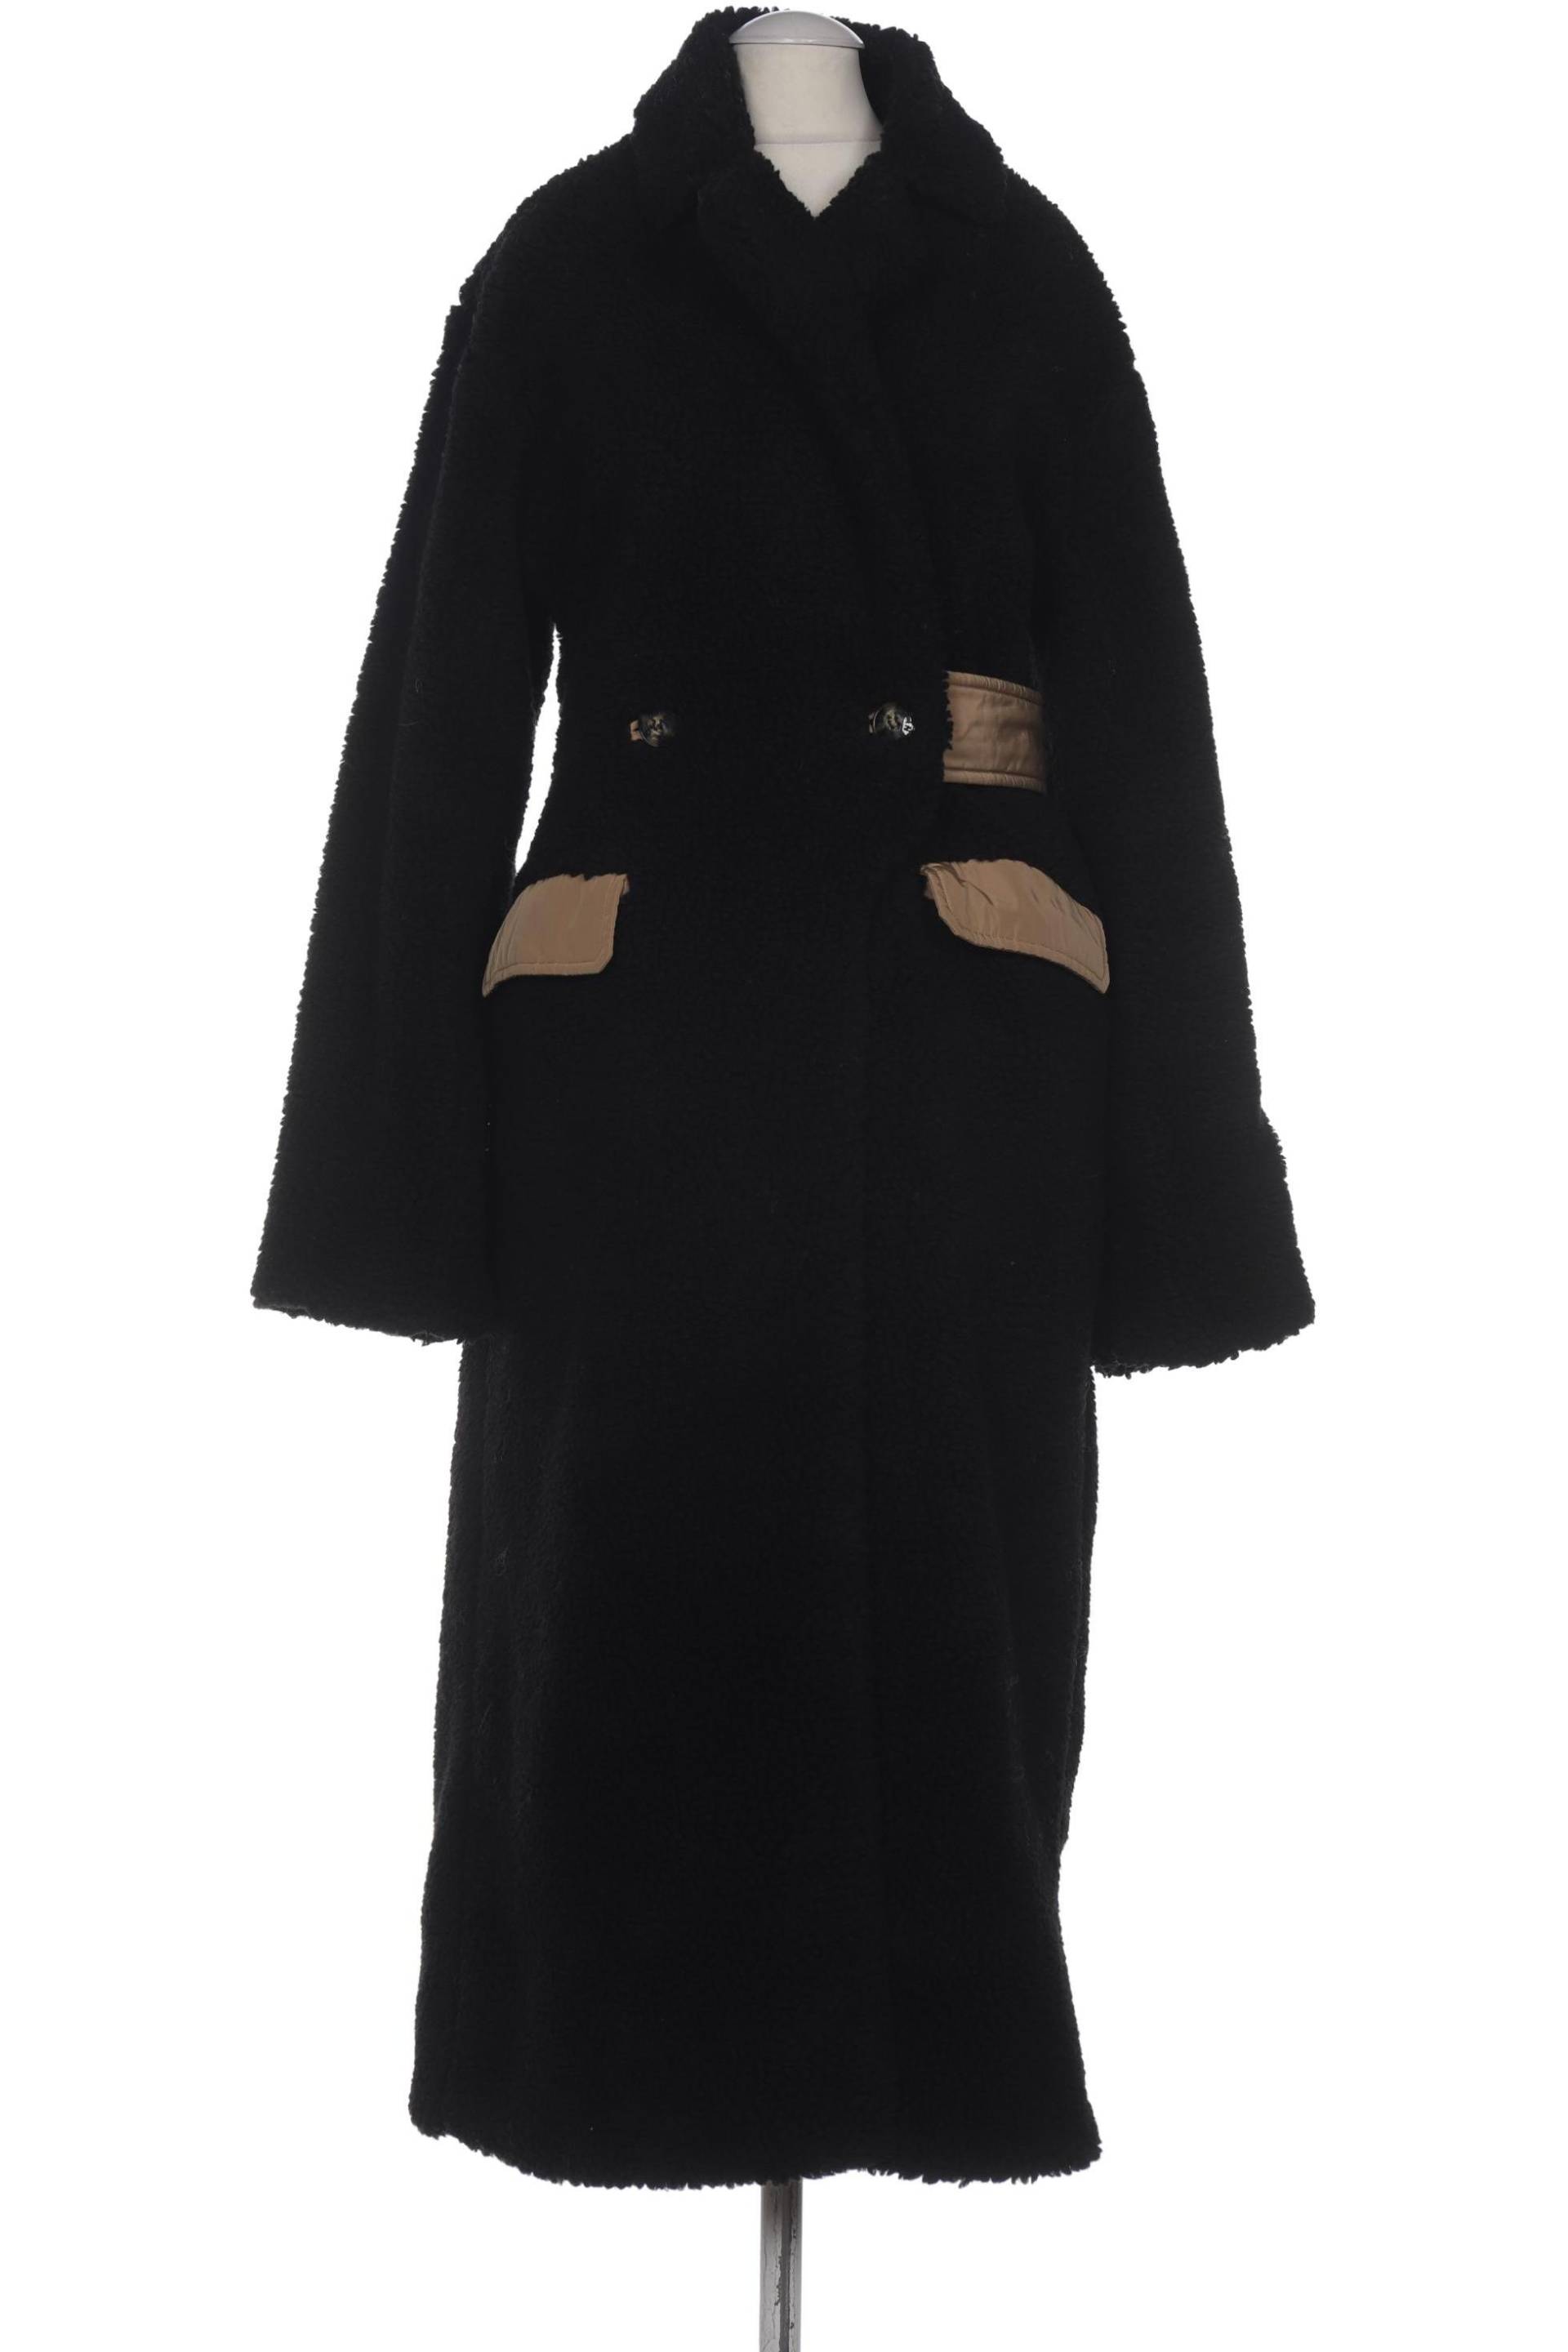 Ganni Damen Mantel, schwarz, Gr. 38 von Ganni